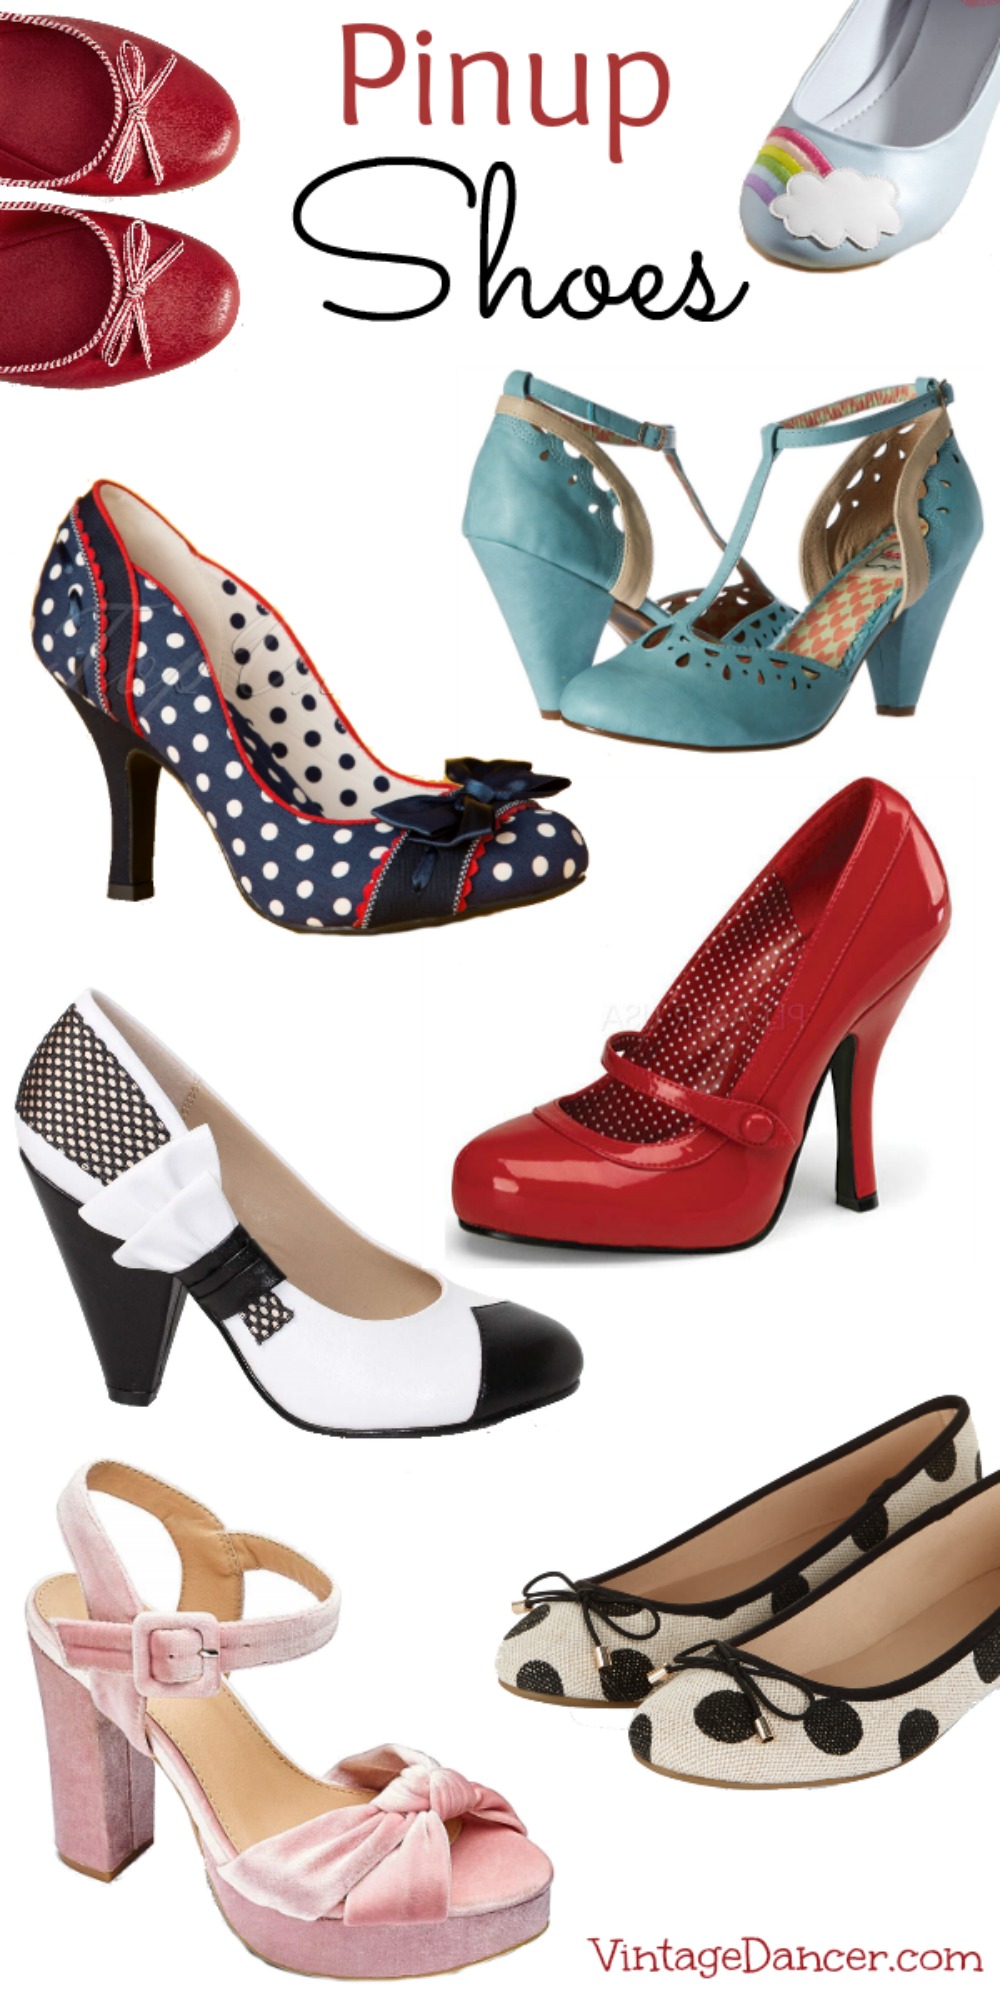 Pin Up Shoes- Heels, Pumps & Flats